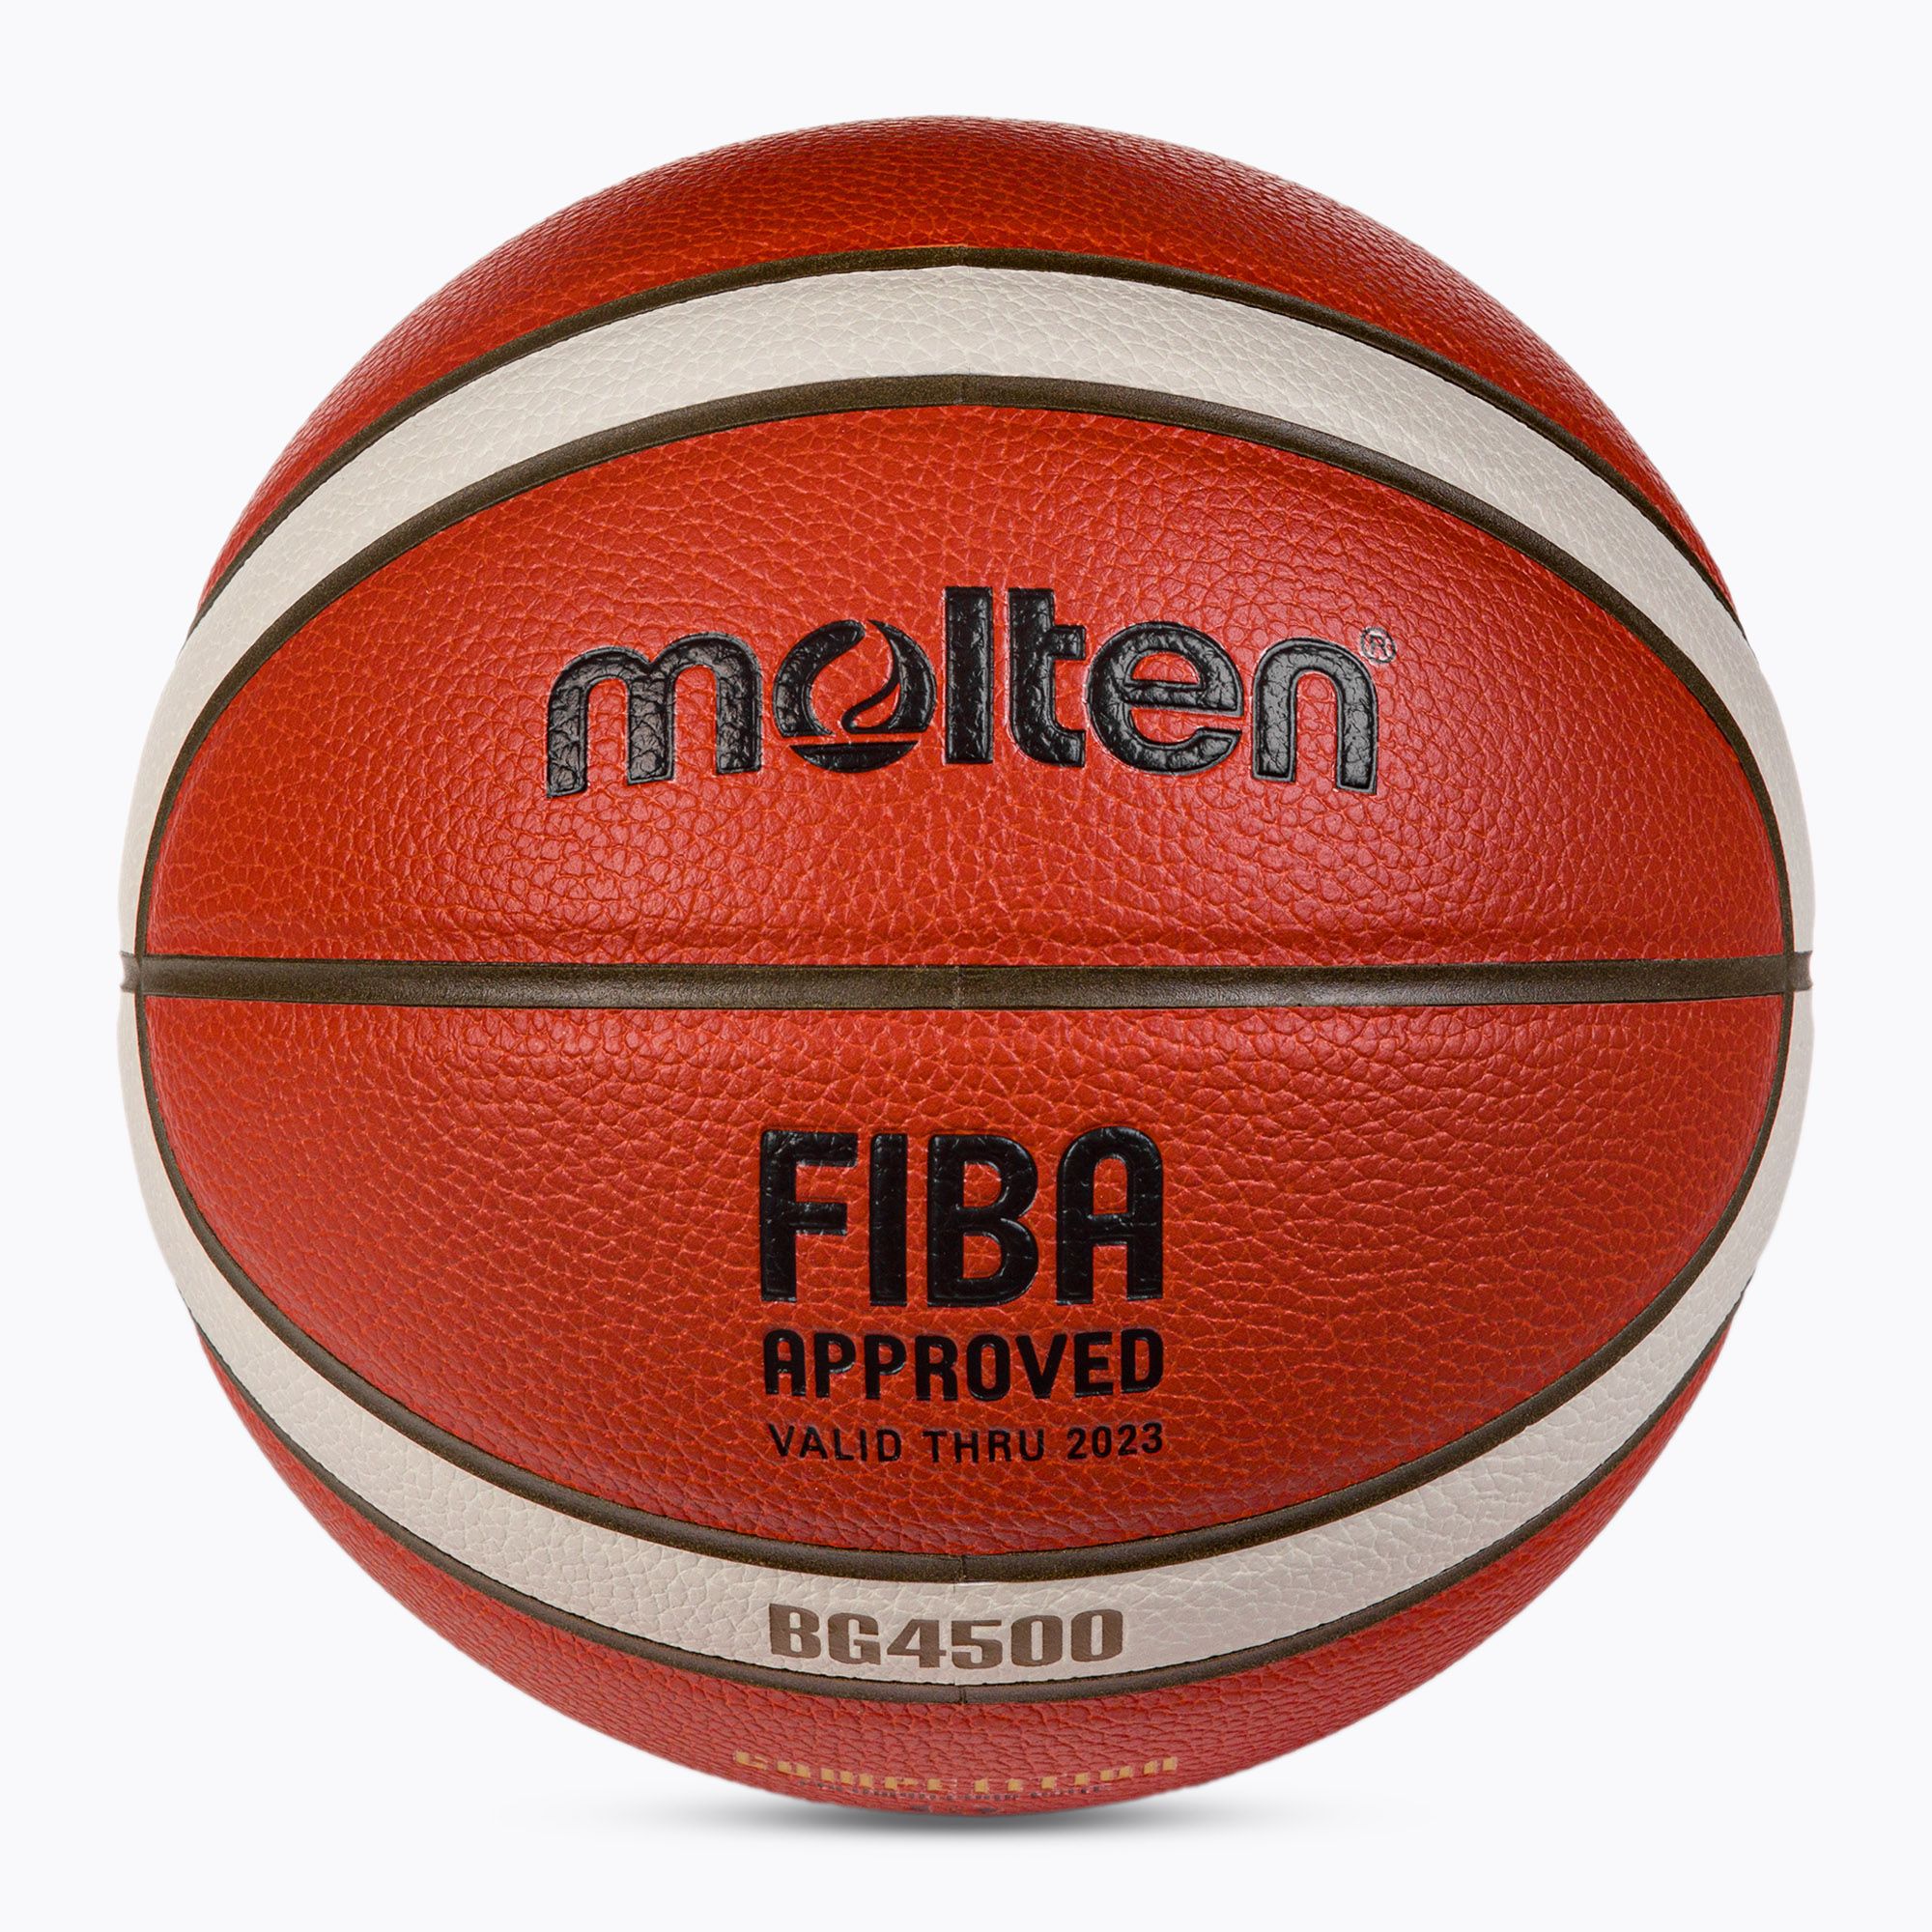 Piłka do koszykówki Molten B6G4500 FIBA pomarańczowa rozmiar 6